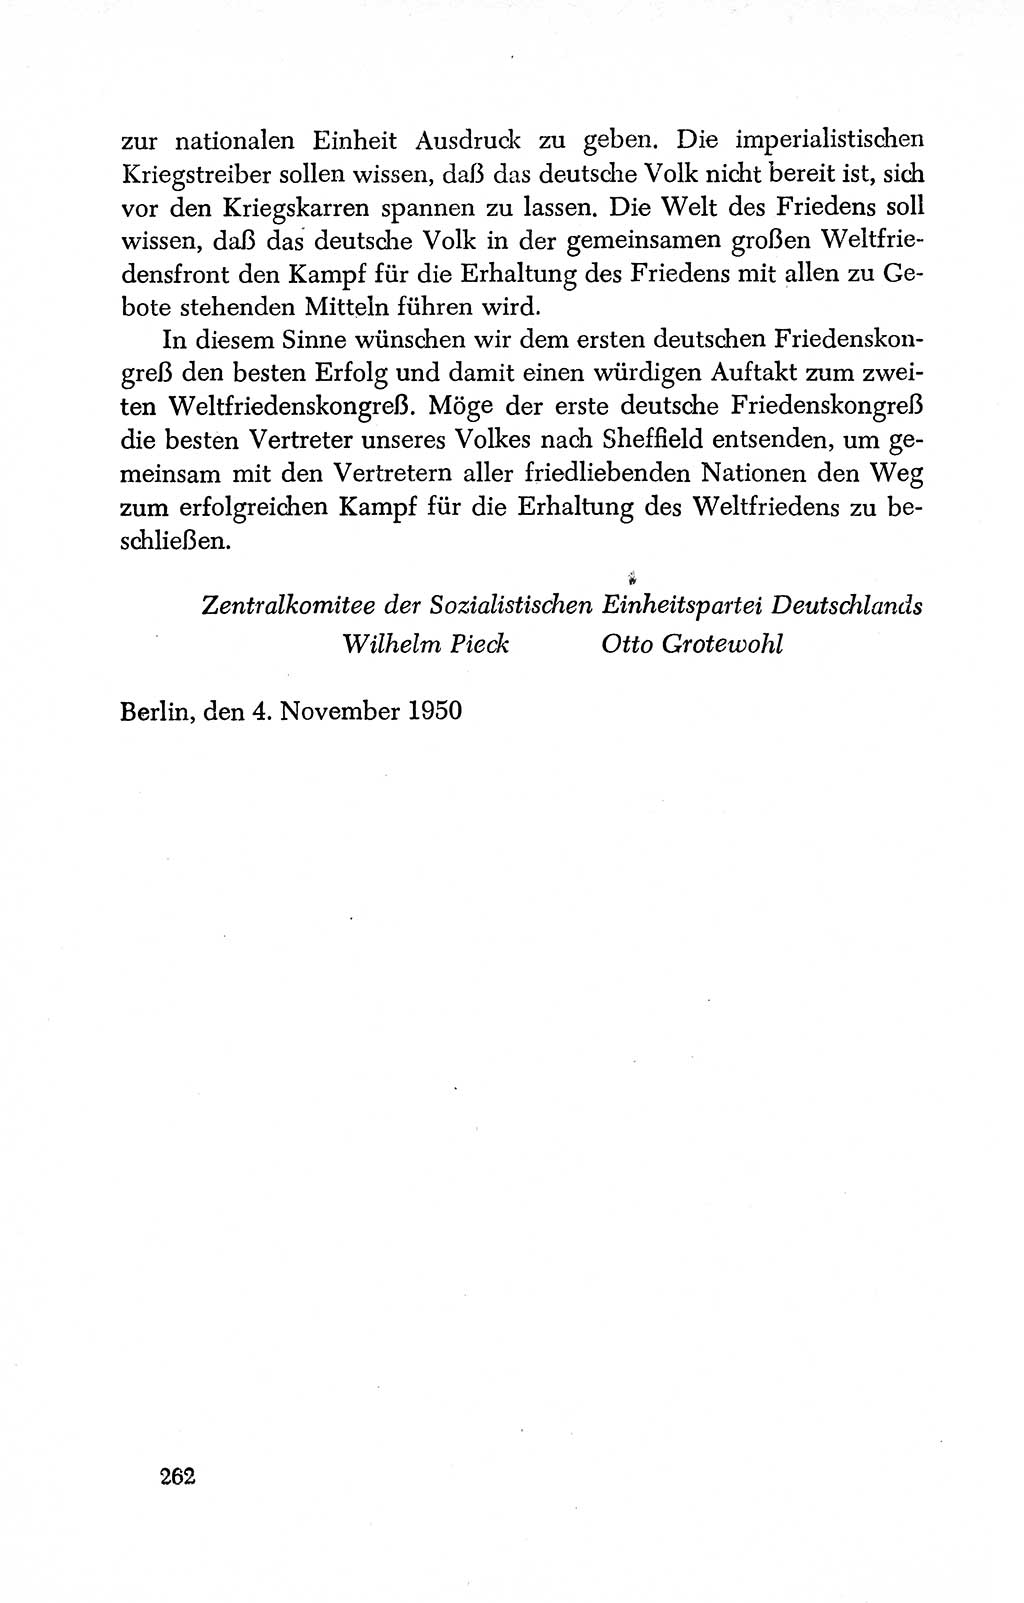 Dokumente der Sozialistischen Einheitspartei Deutschlands (SED) [Deutsche Demokratische Republik (DDR)] 1950-1952, Seite 262 (Dok. SED DDR 1950-1952, S. 262)